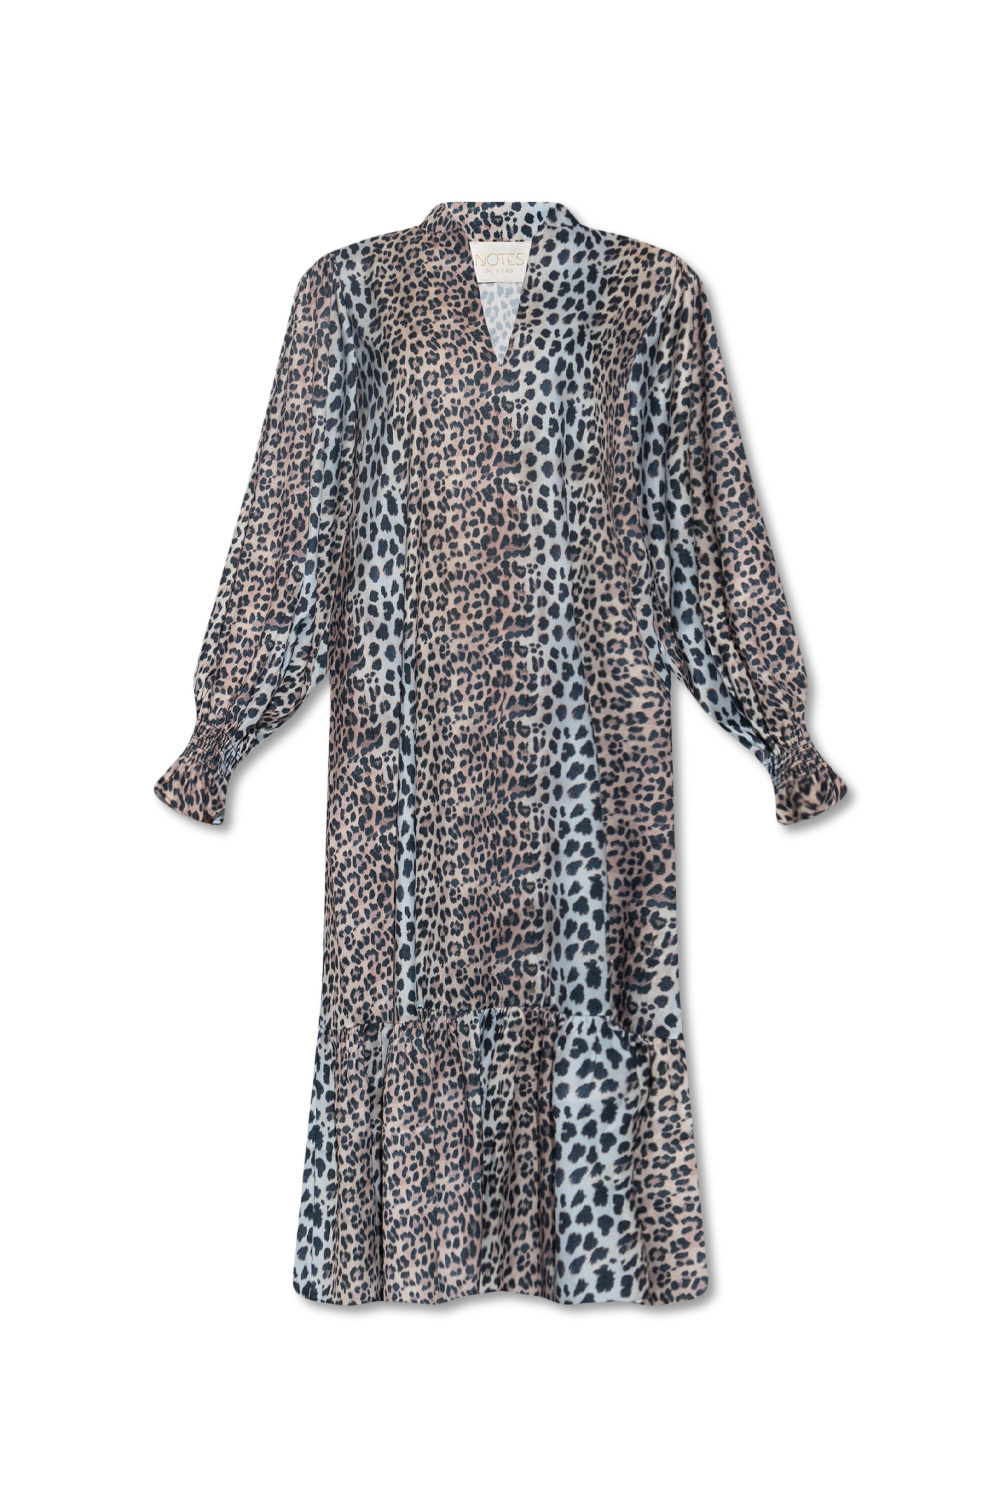 robe safari jean gabriel taille ‘Claire’ dress